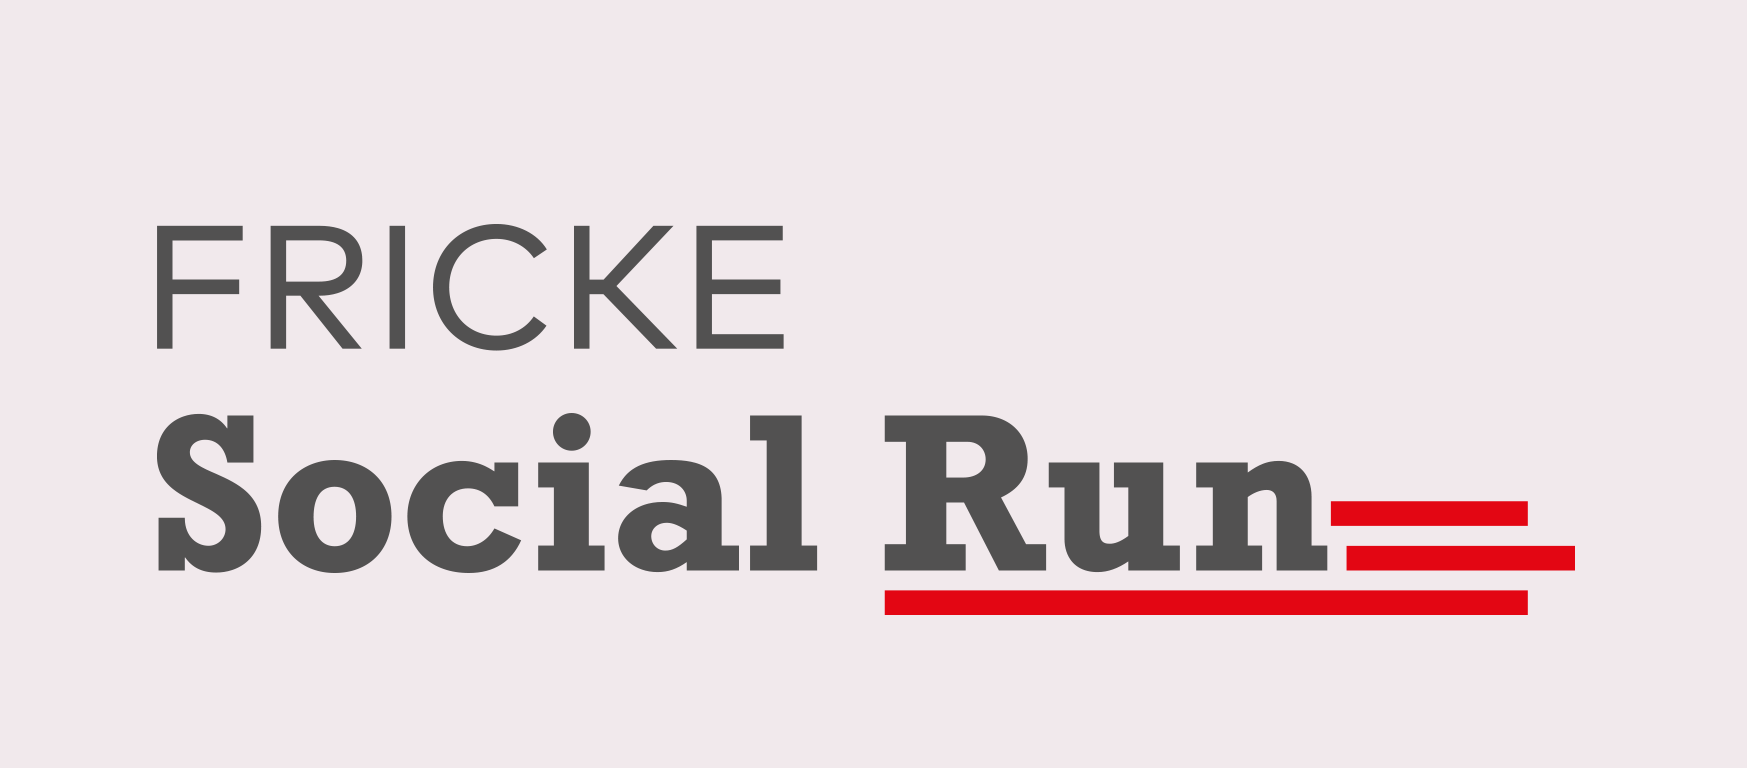 FRICKE Social Run 2020 - Die Ergebnisse sind da!